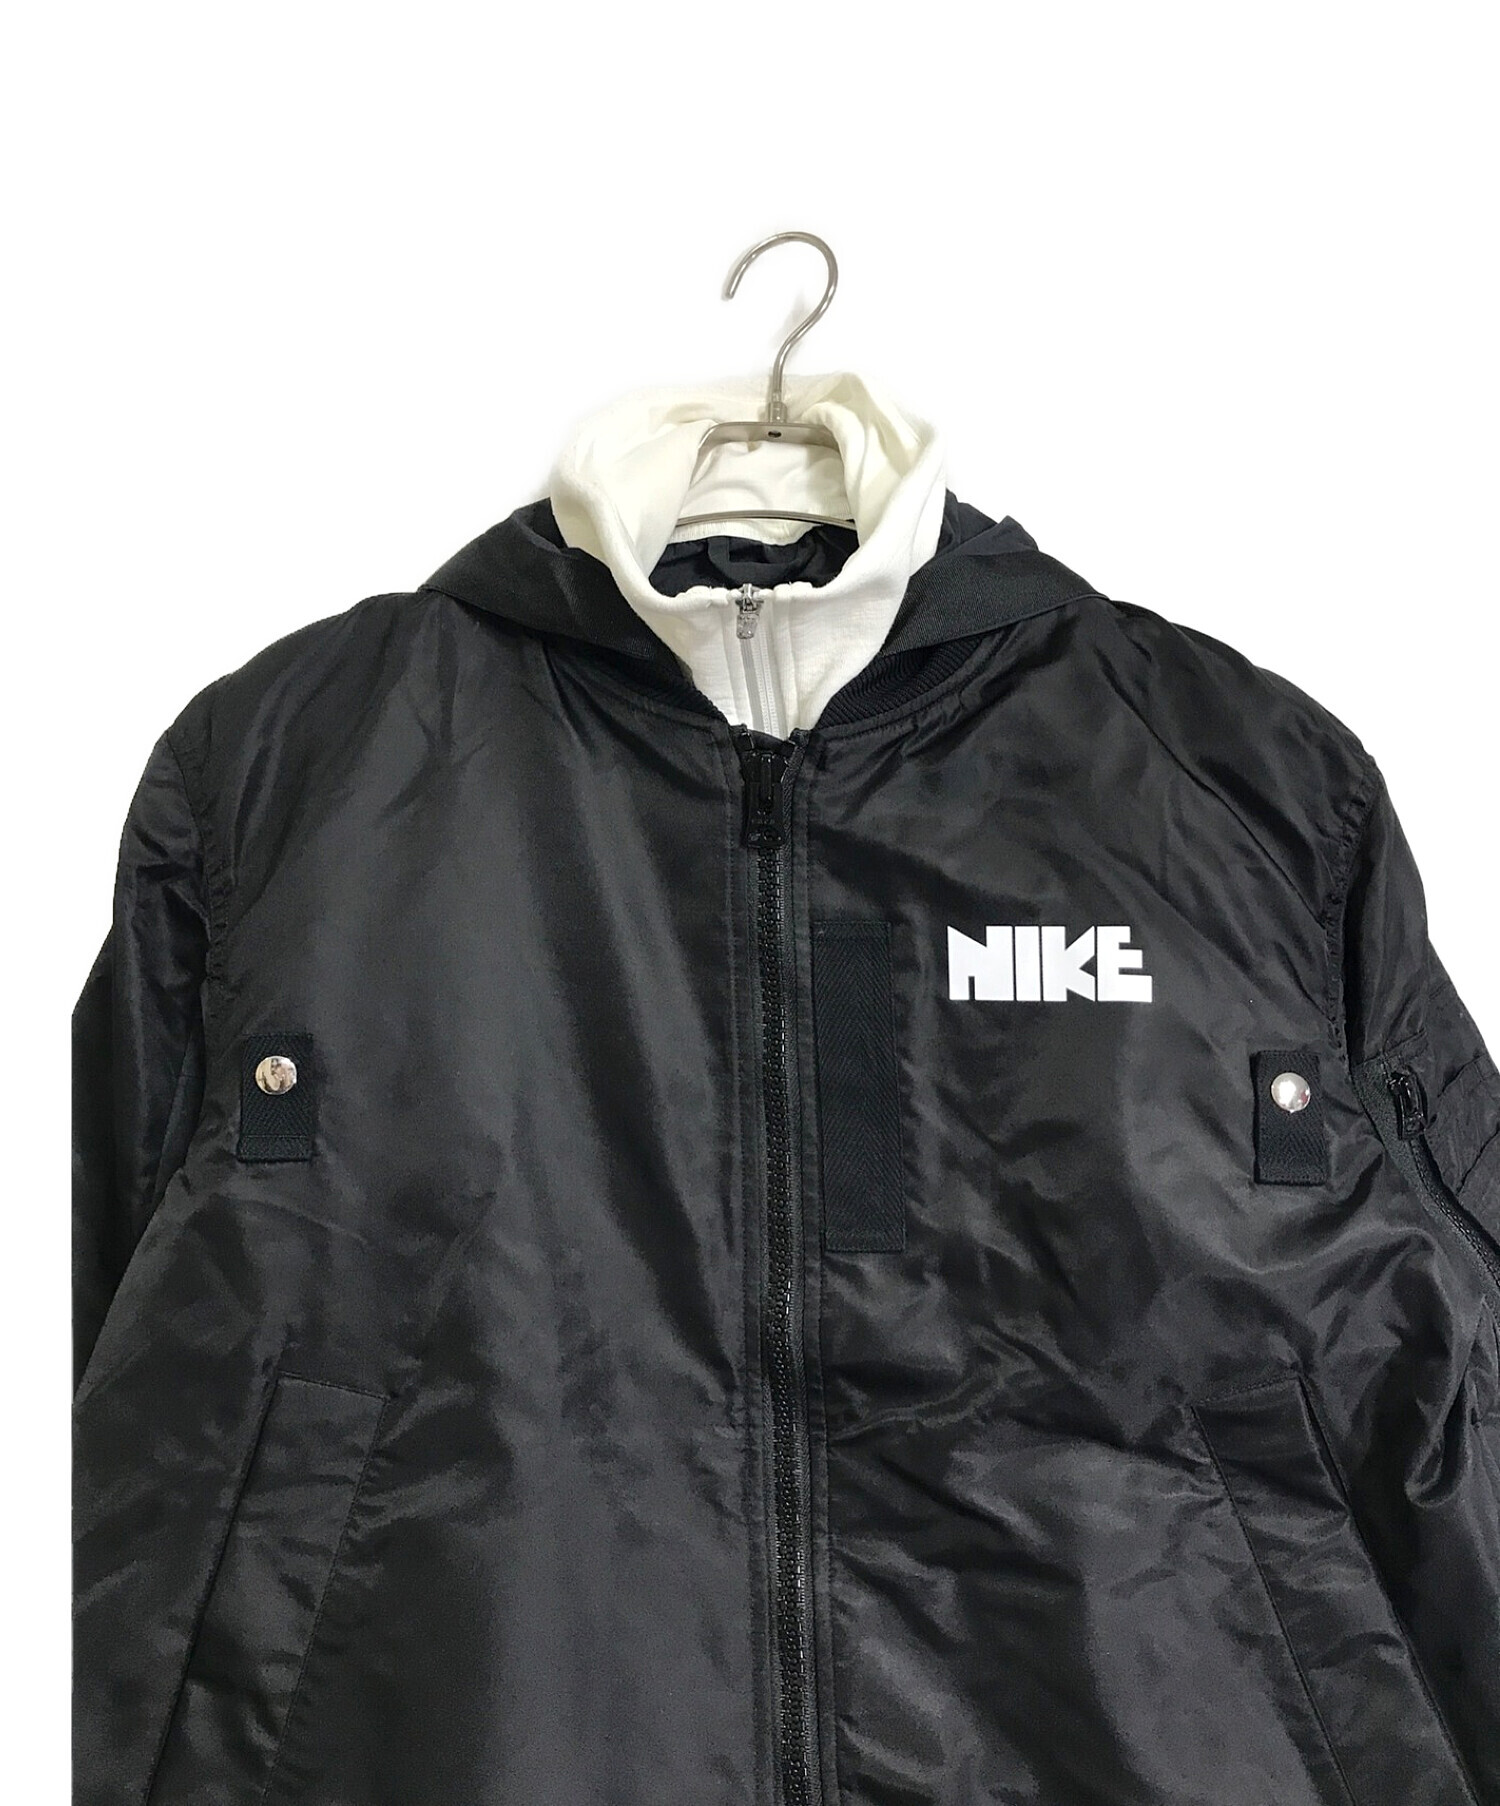 NIKE (ナイキ) sacai (サカイ) MA-1/レイヤードフードボンバージャケット ブラック×ホワイト サイズ:M